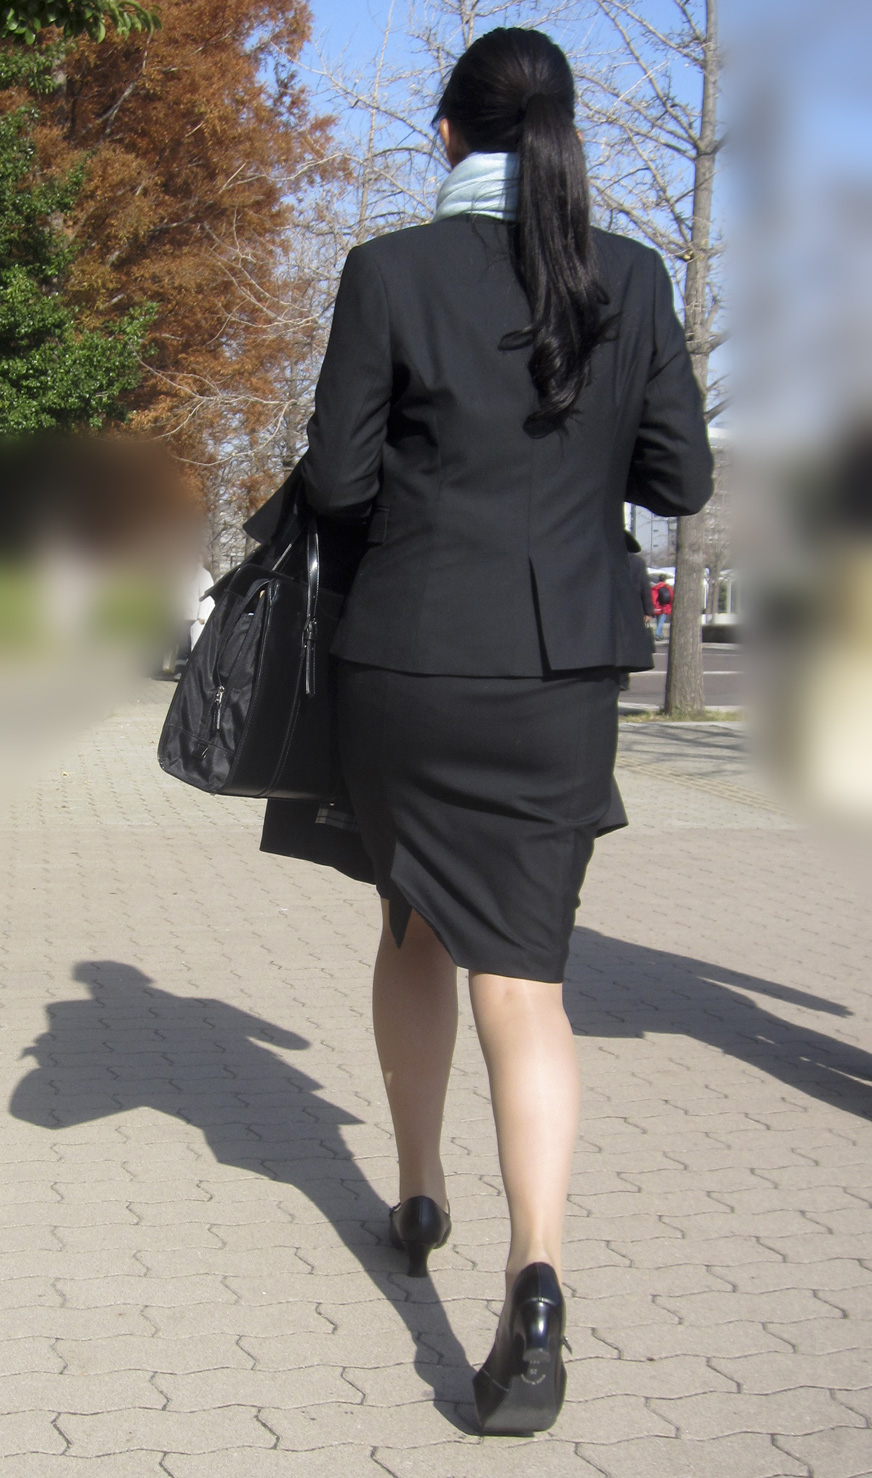 OLさんや就活女子のタイトスカートお尻を街撮りした素人エロ画像-148